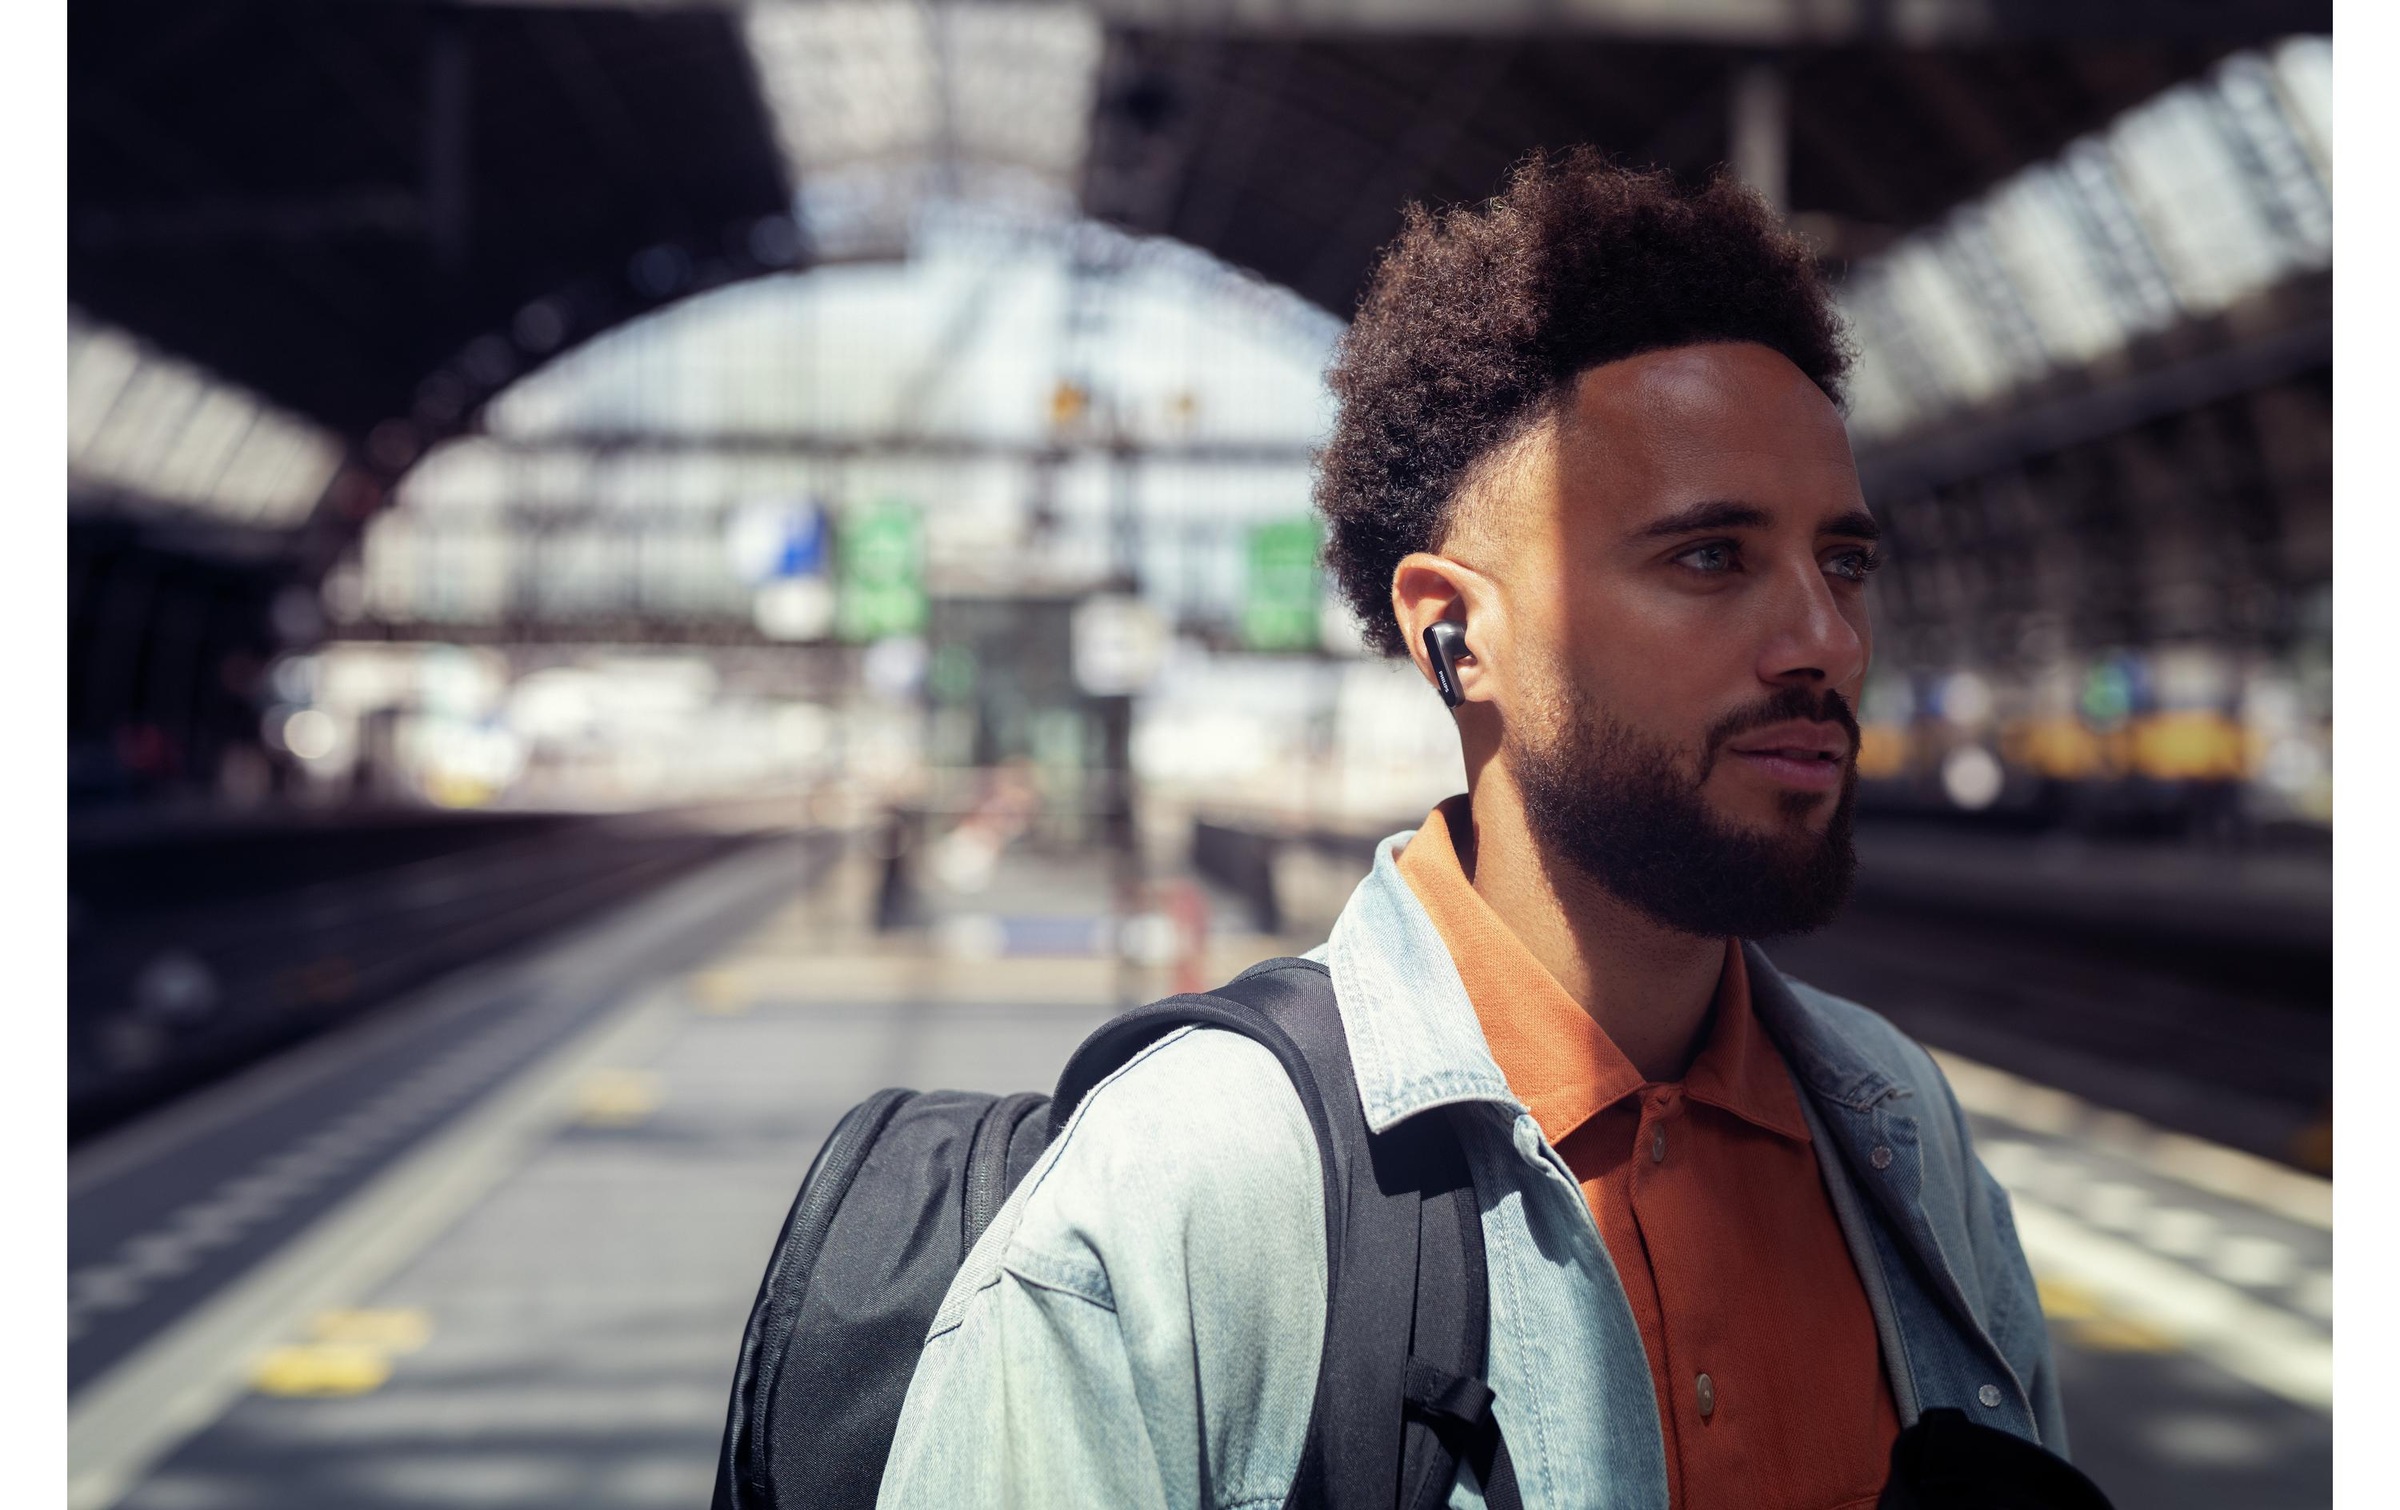 Philips wireless In-Ear-Kopfhörer »True Wireless«, Bluetooth